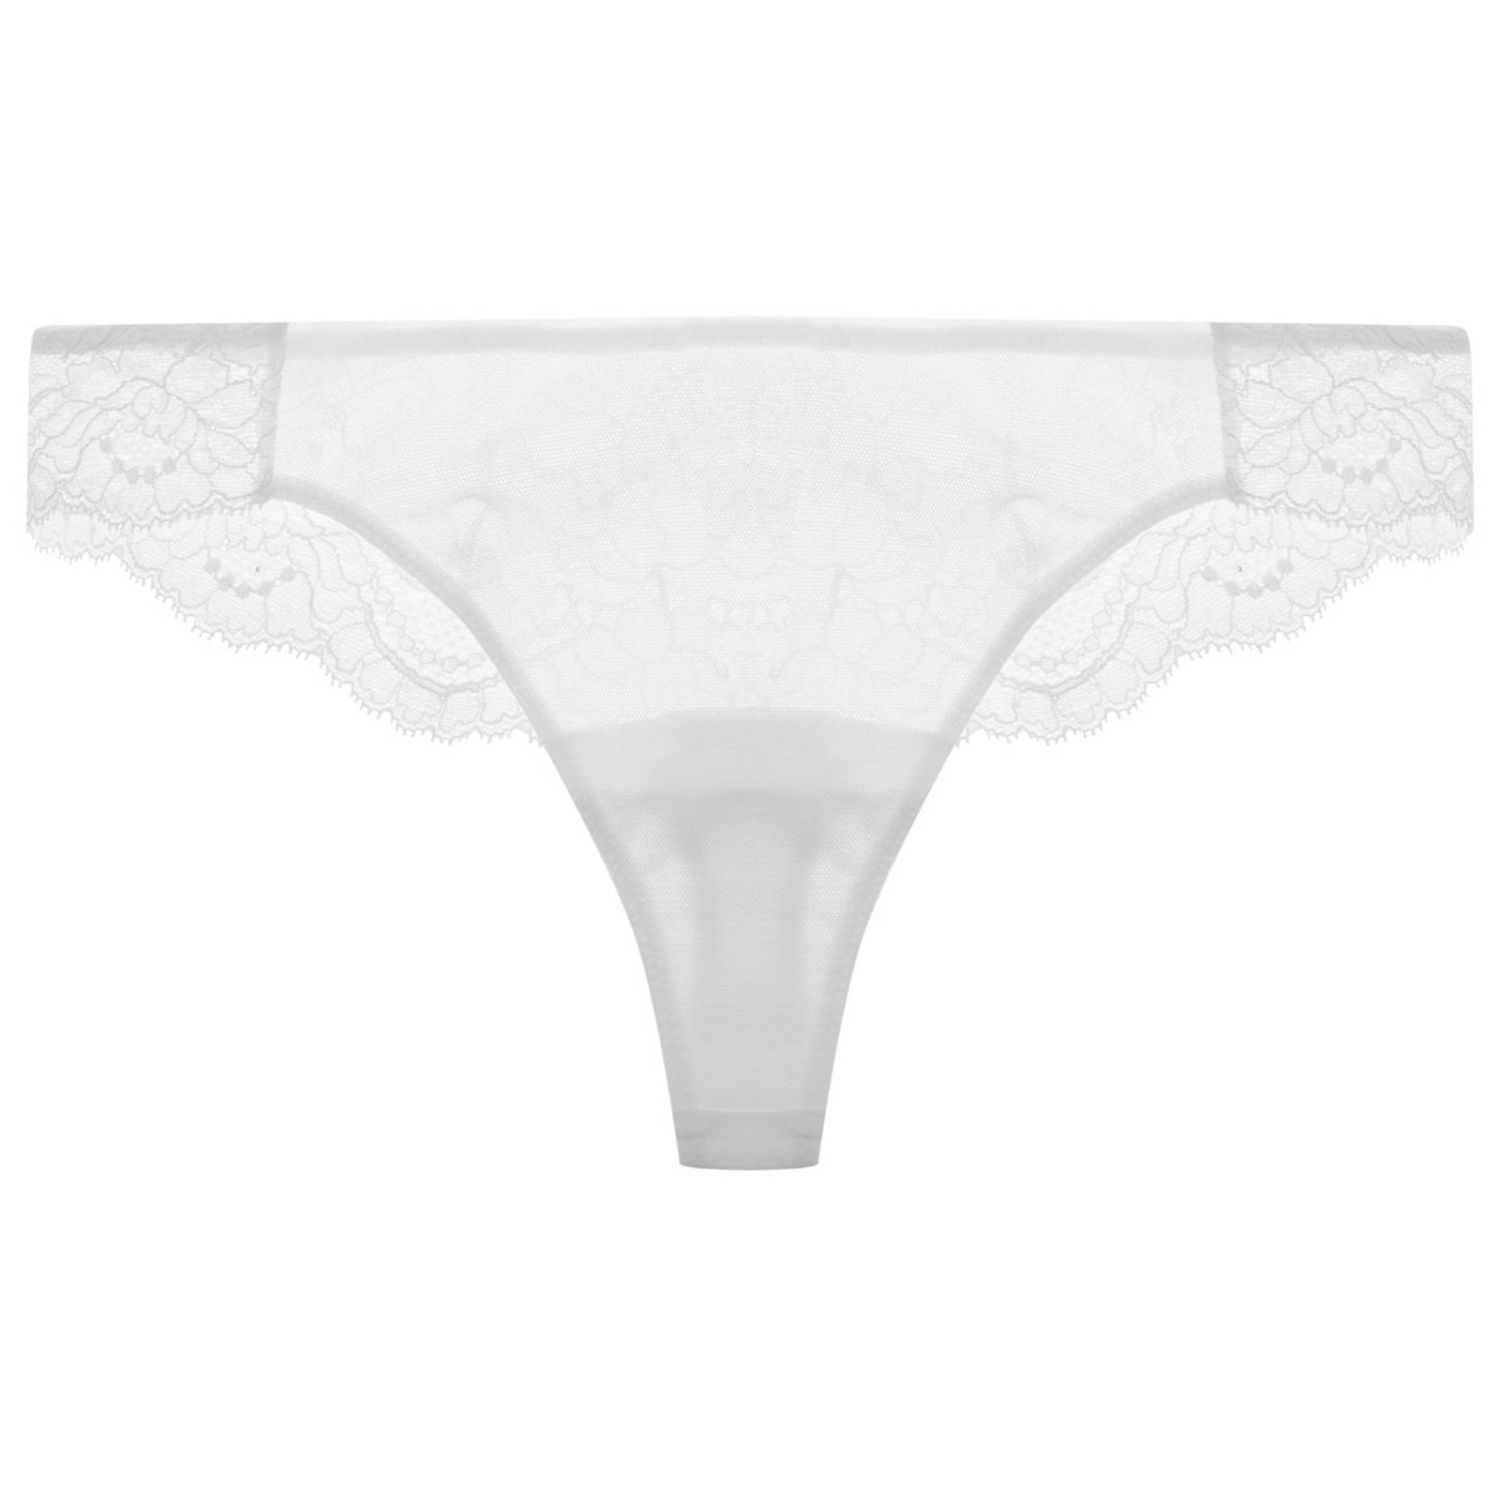 La Perla Outlet: Underwear women | Lingerie La Perla Women White ...